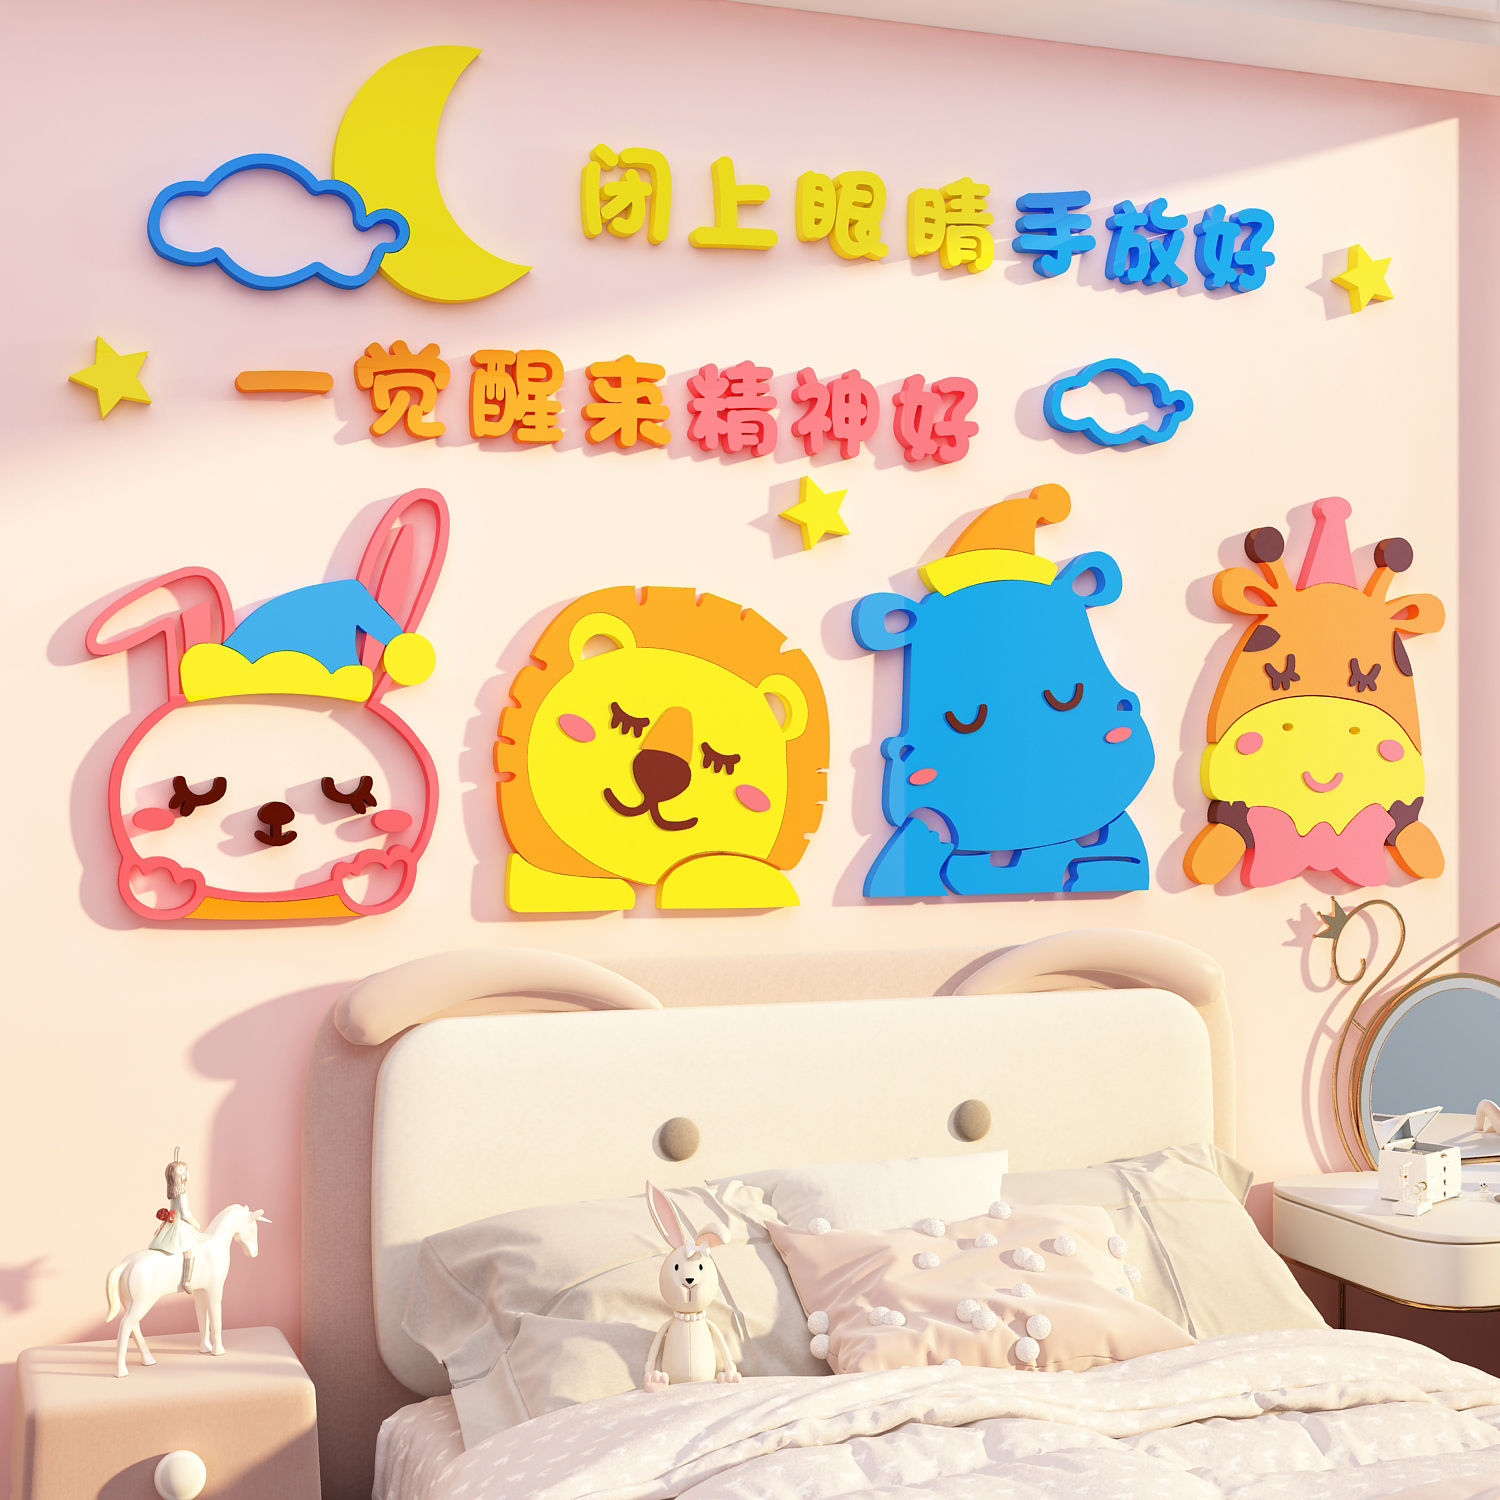 网红婴儿童房间布置公主卧室墙面装饰改造用品小女孩床头画贴纸壁